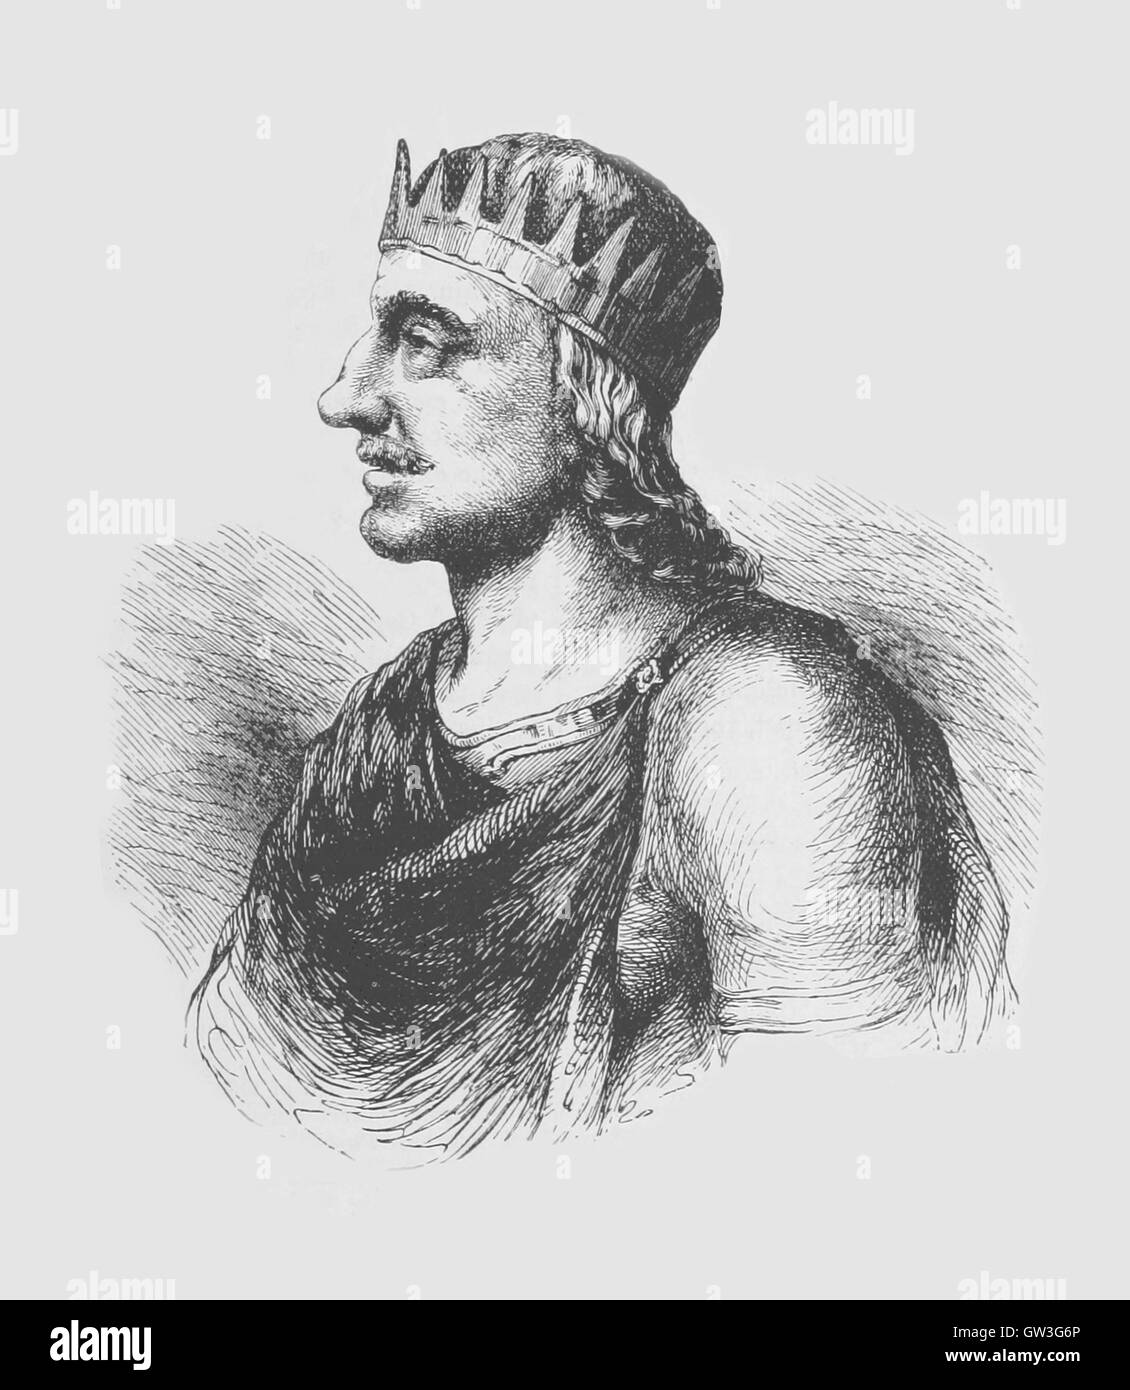 König Egbert von Wessex.  Egbert, auch buchstabiert aus, Ecgbert oder Ecgbriht, war König von Wessex von 802 bis zu seinem Tod 839. Sein Vater war Ealhmund von Kent.  Bild von Cassell es illustrierte Weltgeschichte (1893) bezogen. Stockfoto